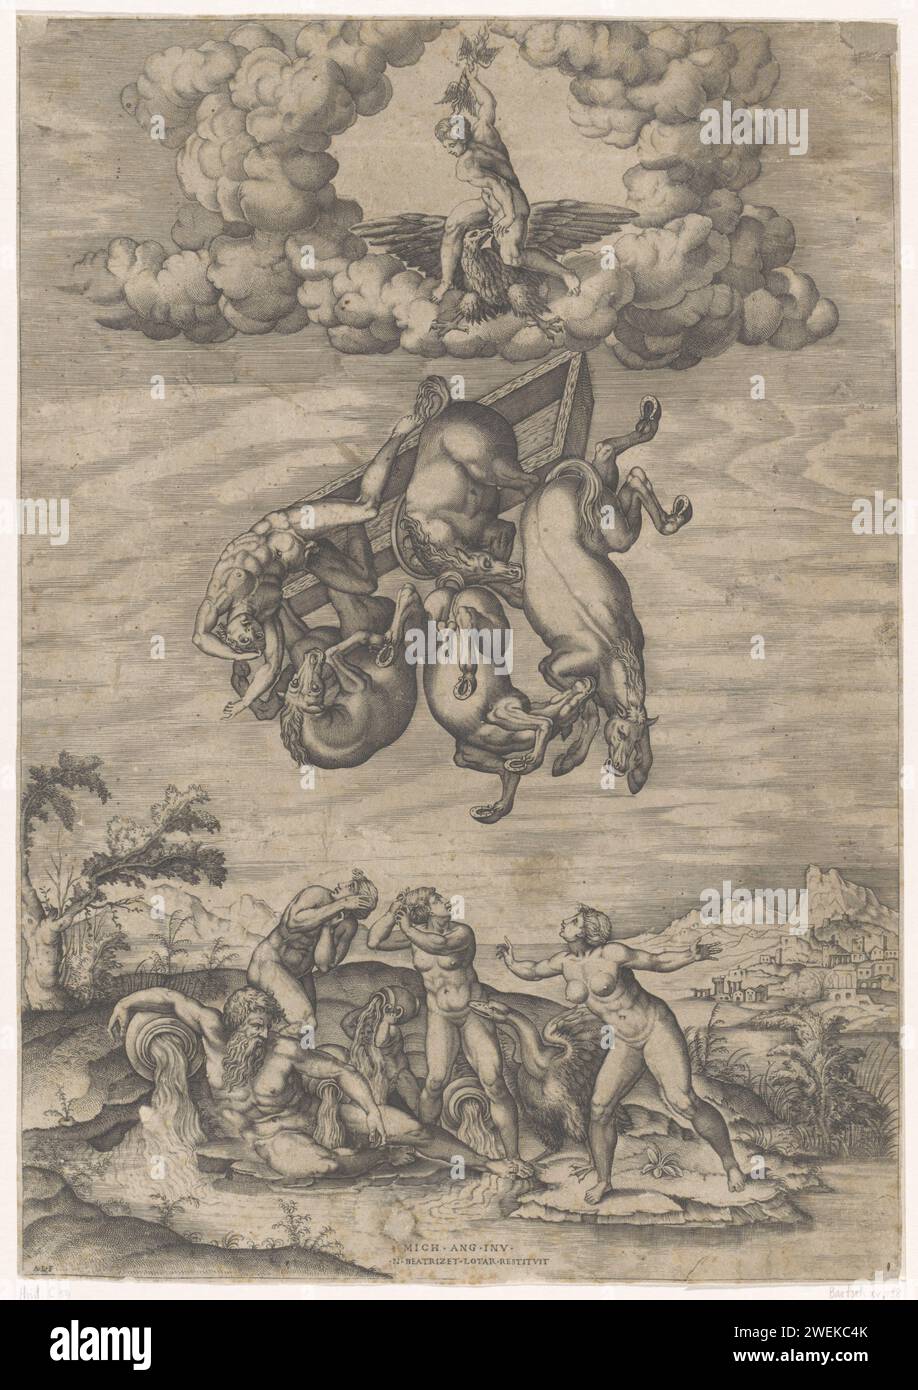 Val van Phaëthon, Nicolas Beatrizet, nach Michelangelo, 1525–1565 Druck Phaëthon fällt mit seinem Auto und seinen vier Pferden vom Himmel. Über Jupiter auf seinem Adler, der einen Blitz werfen wird. Unter einem Flussgott (Eridanus) und vier Bade-Nymphen. Papierätzung/Gravur Phaethon. Der Fall von Phaethon wird von einem Blitz des Jupiters getroffen Stockfoto